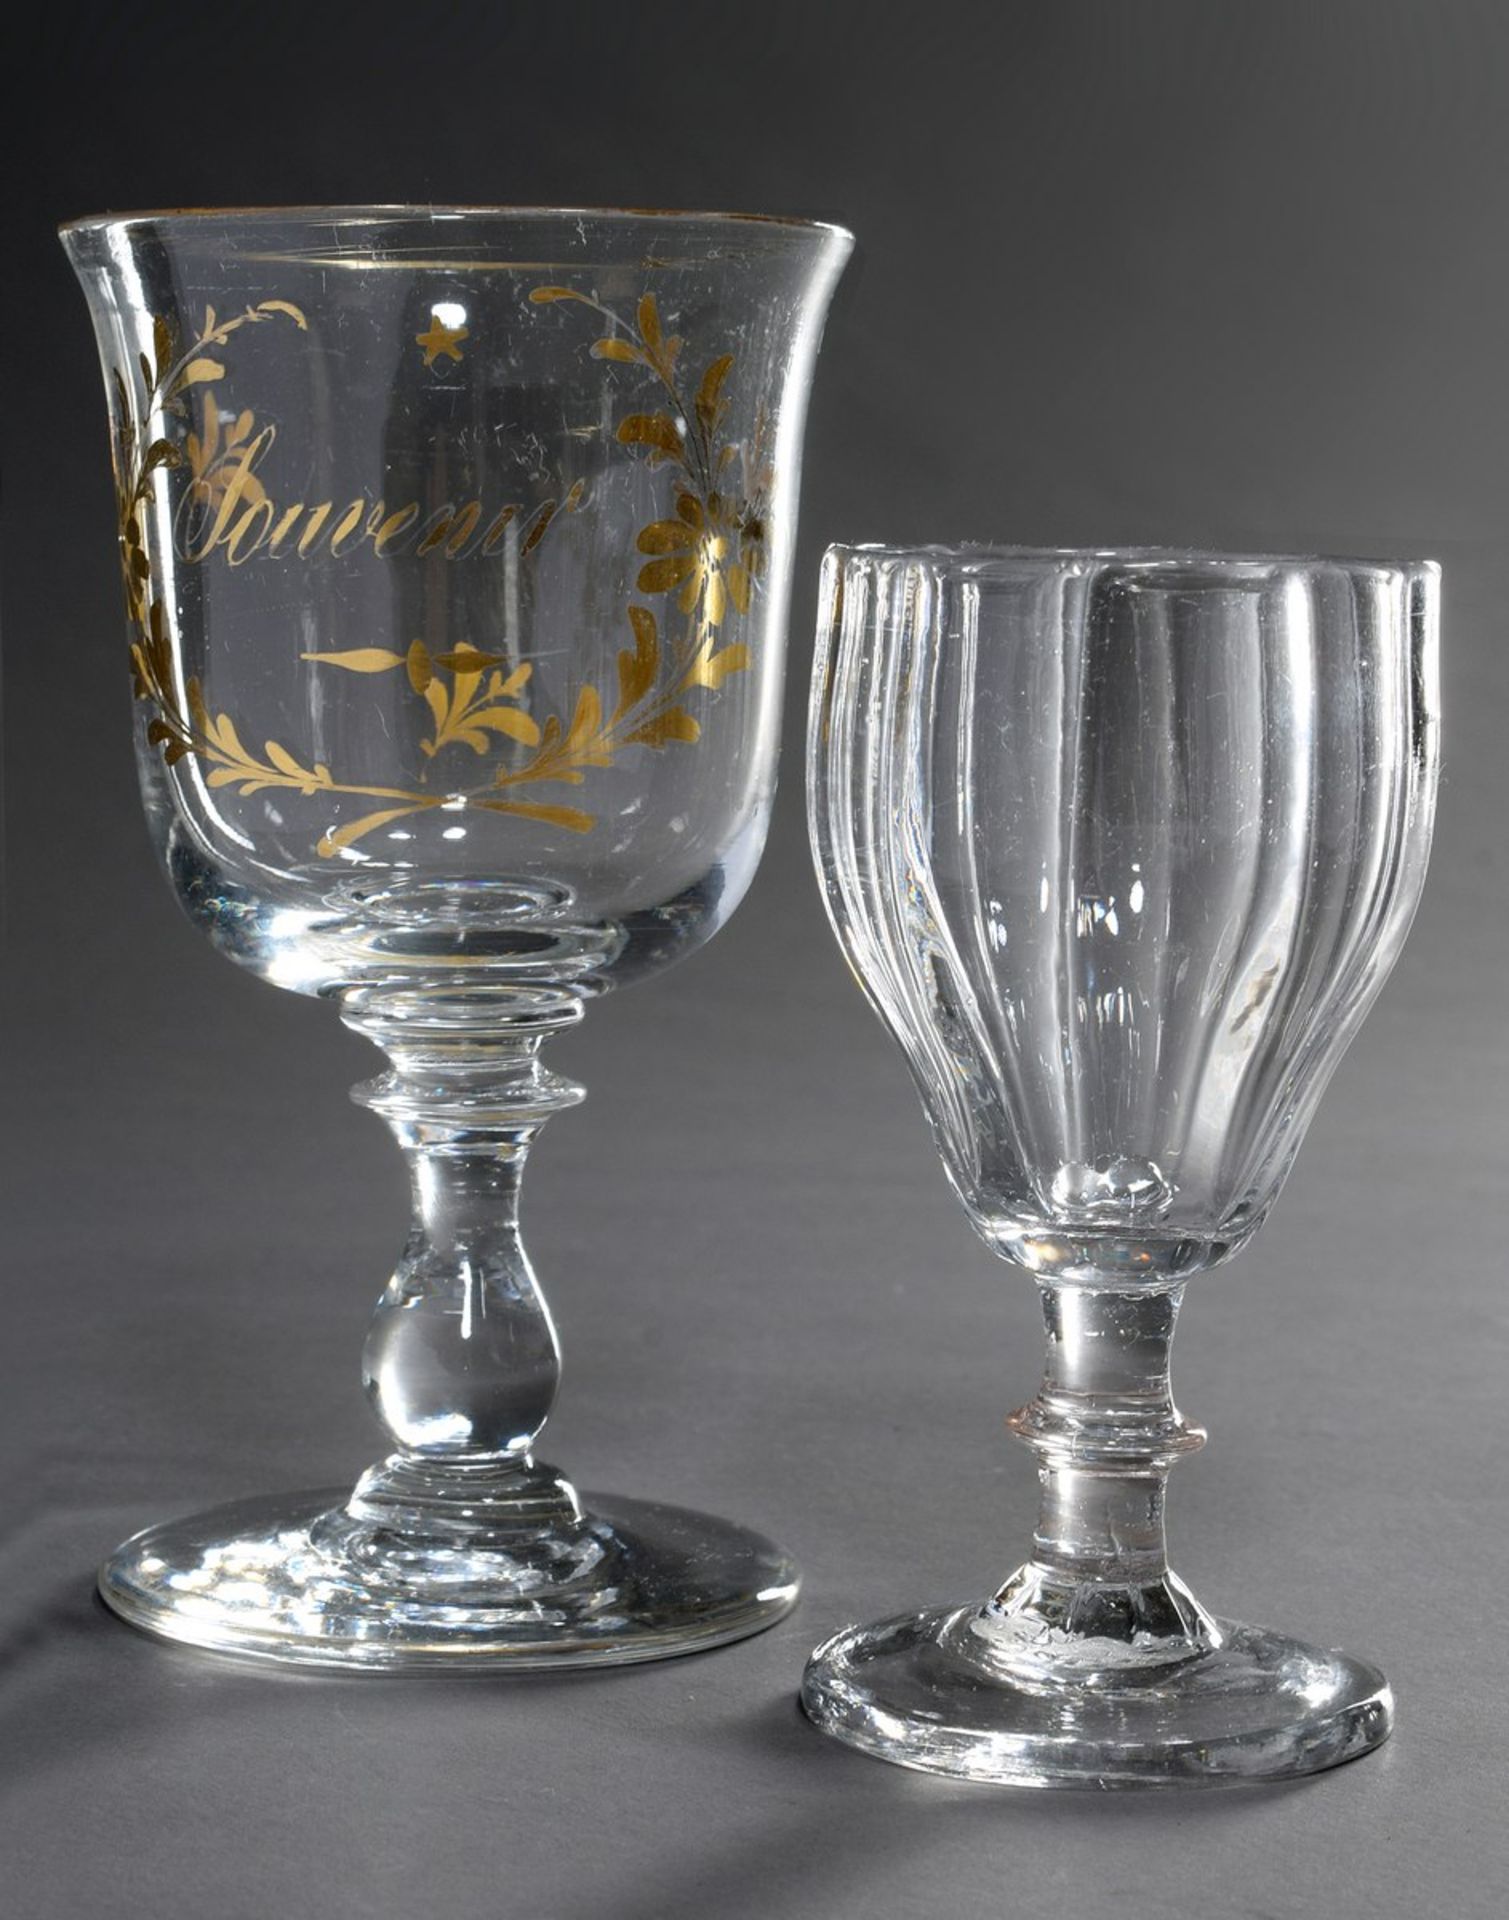 2 Teile antikes Glas: kleines facettiertes Weinglas und Kelch mit goldener Inschrift "Souvenir",